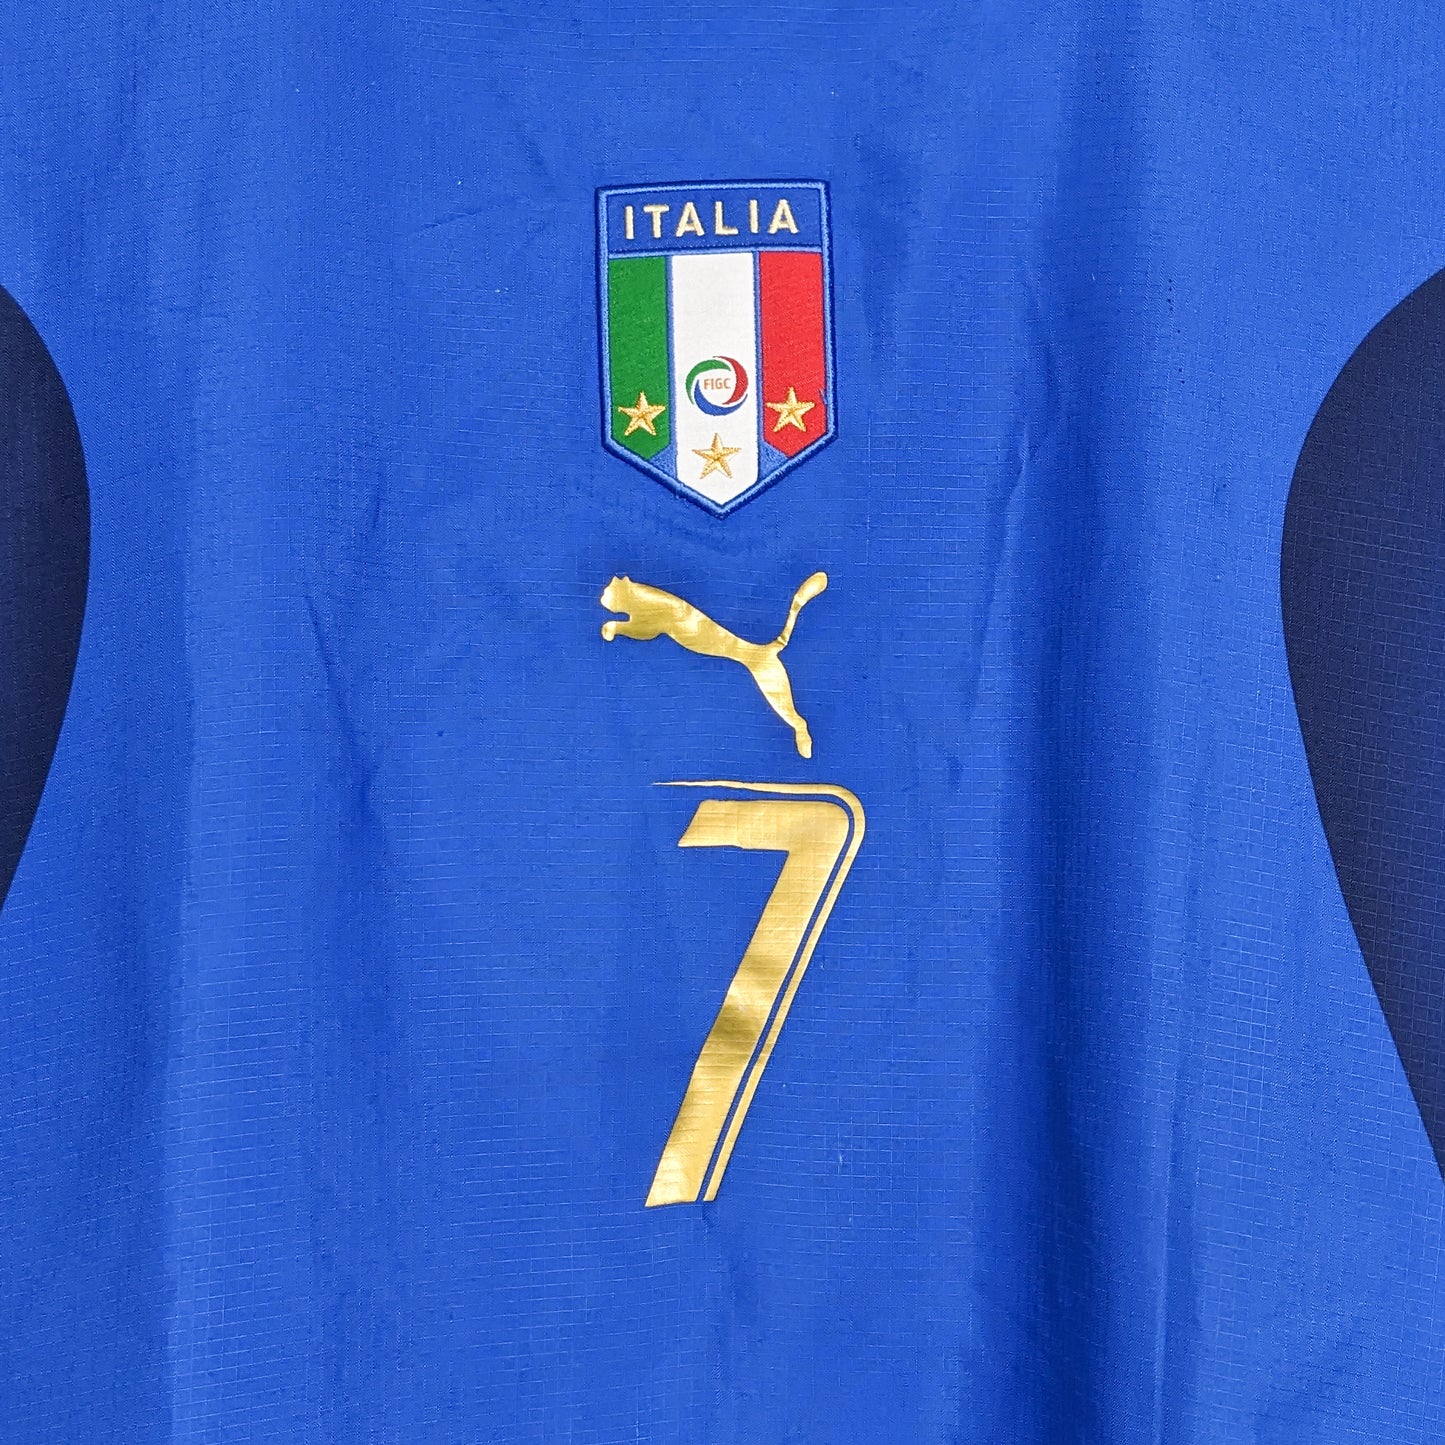 Authentic Italy 2006 Home - Del Piero #7 Size L